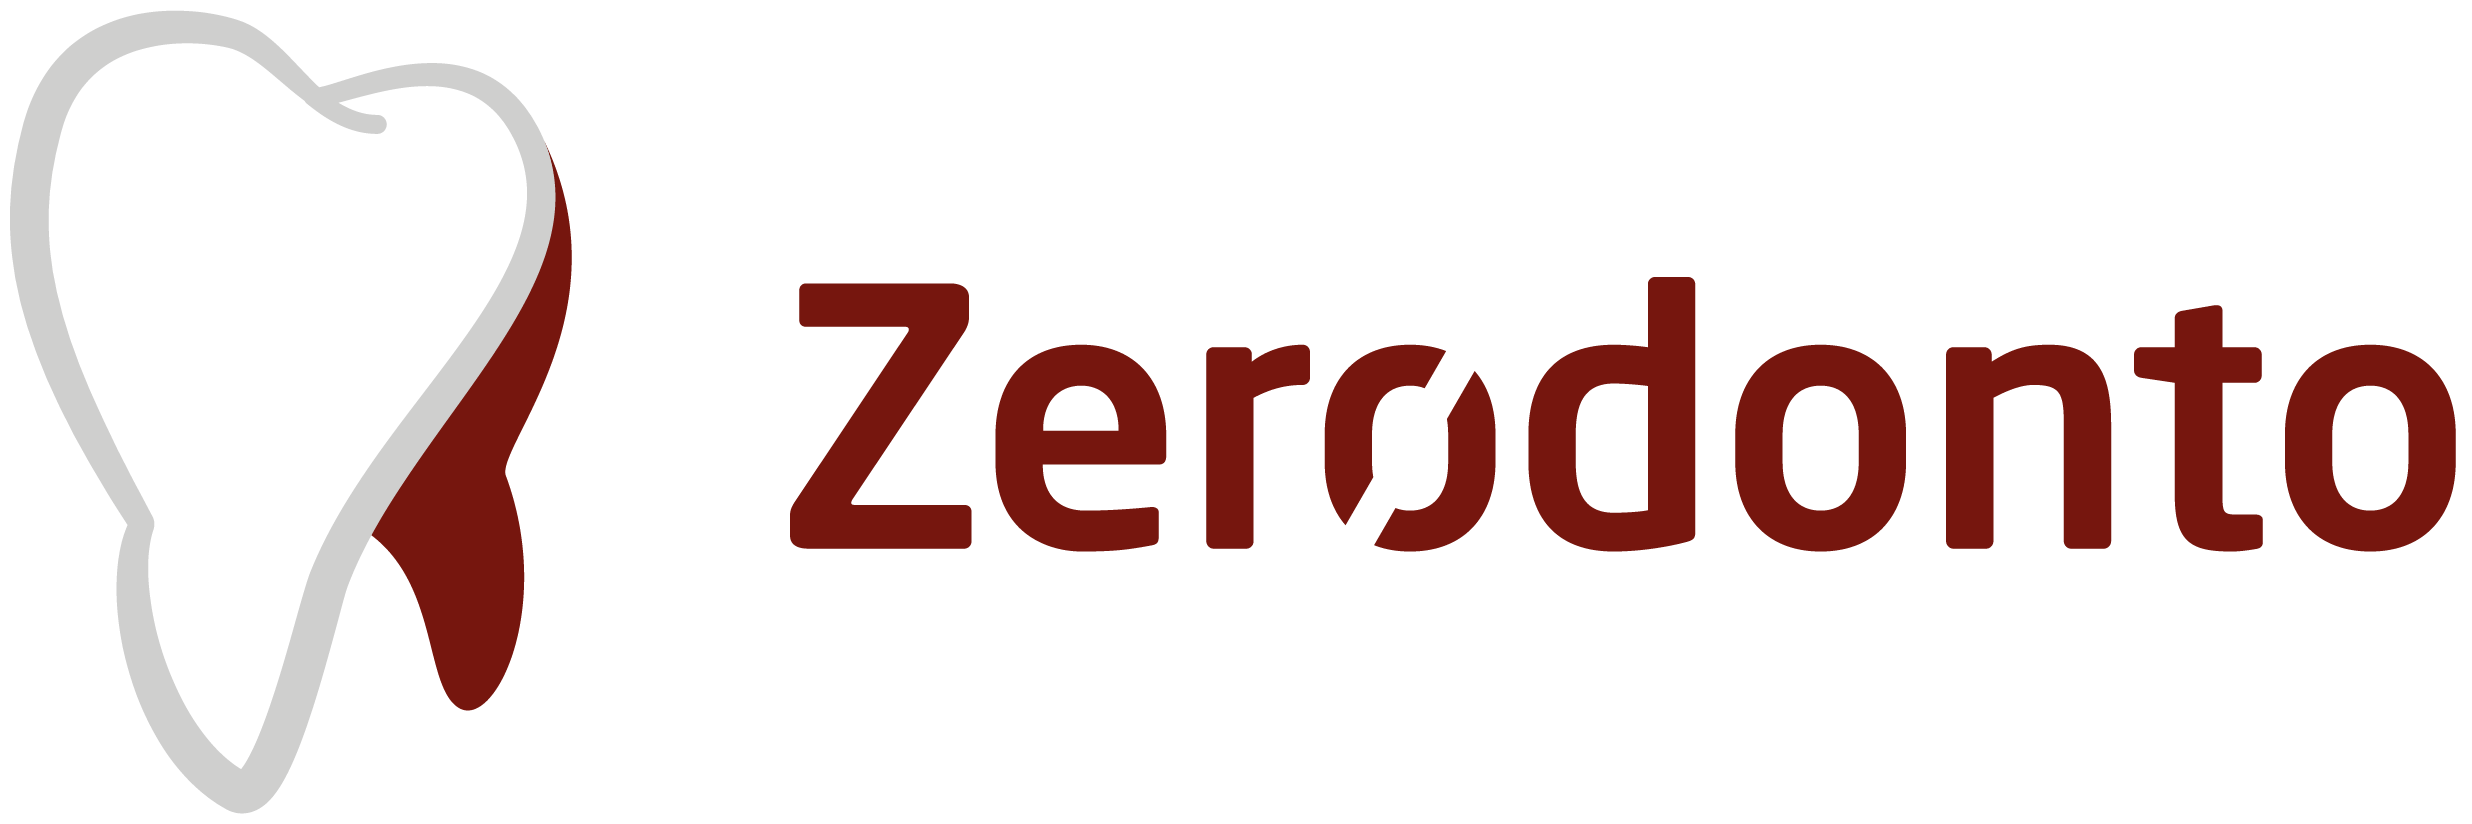 Zerodonto 